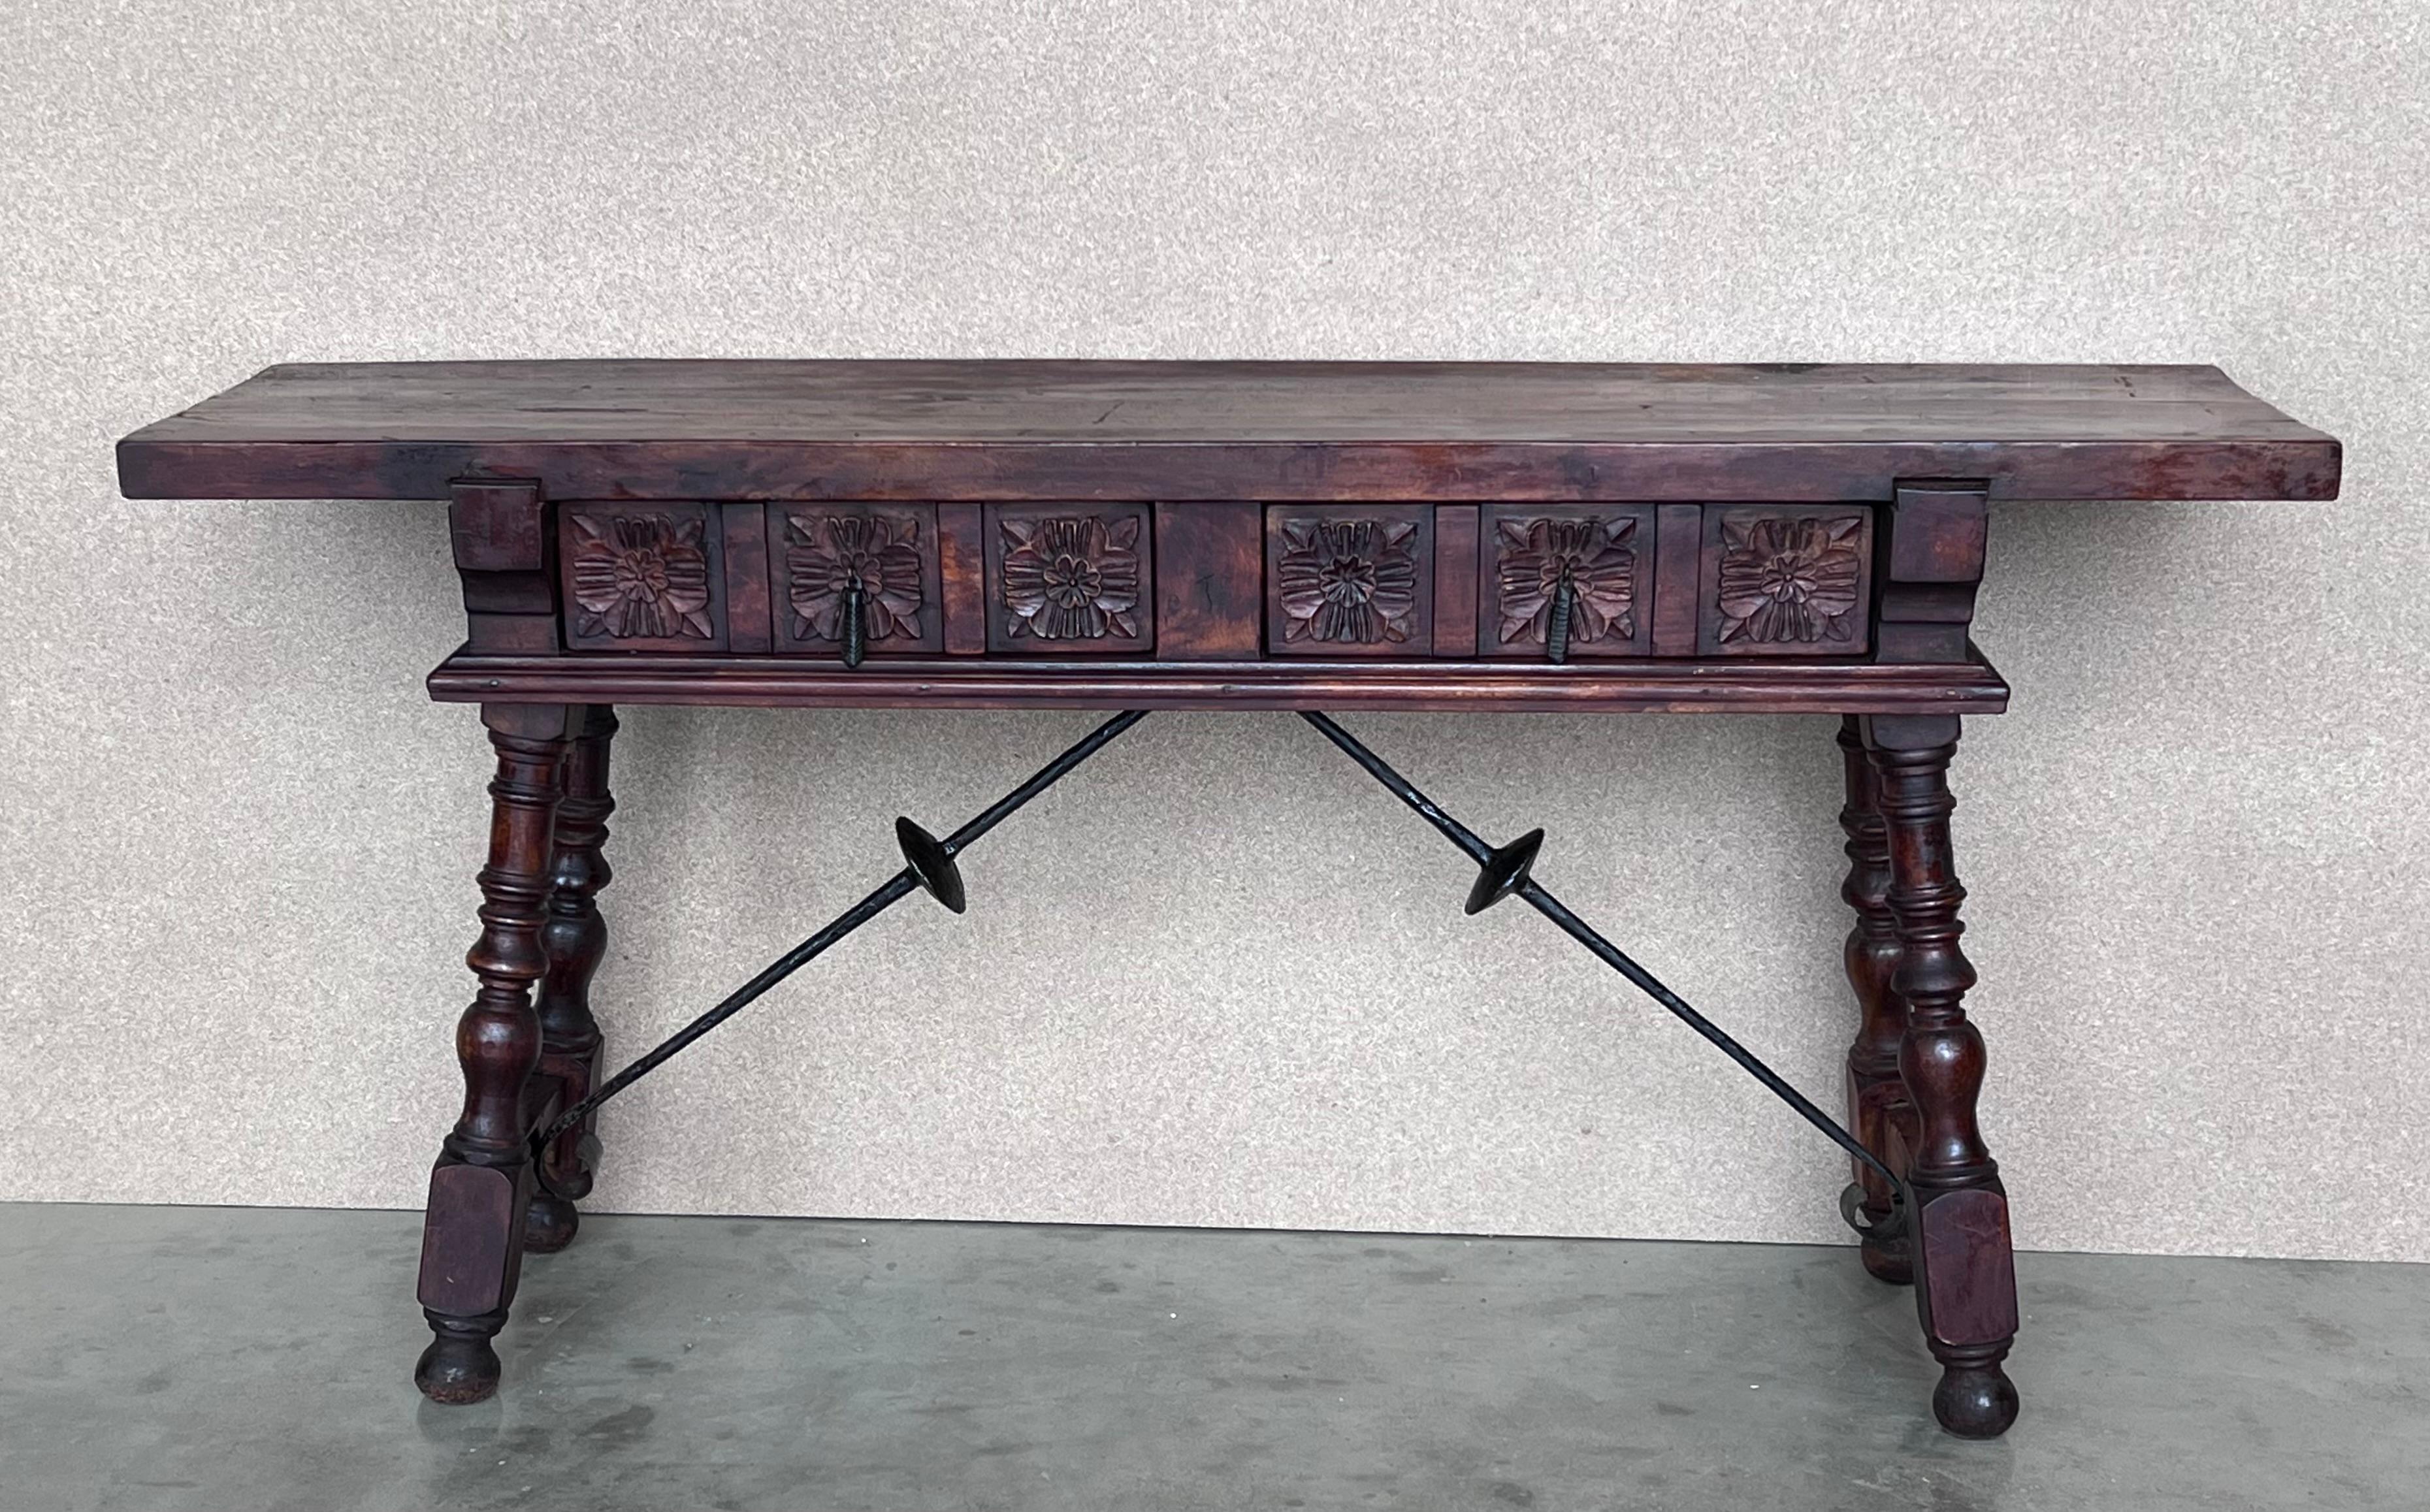 Ce grand meuble espagnol du XIXe siècle présente un magnifique plateau rectangulaire à une planche sur deux tiroirs sculptés avec des ferrures légèrement différentes. Il est orné de motifs géométriques et de leurs poignées d'origine faites à la